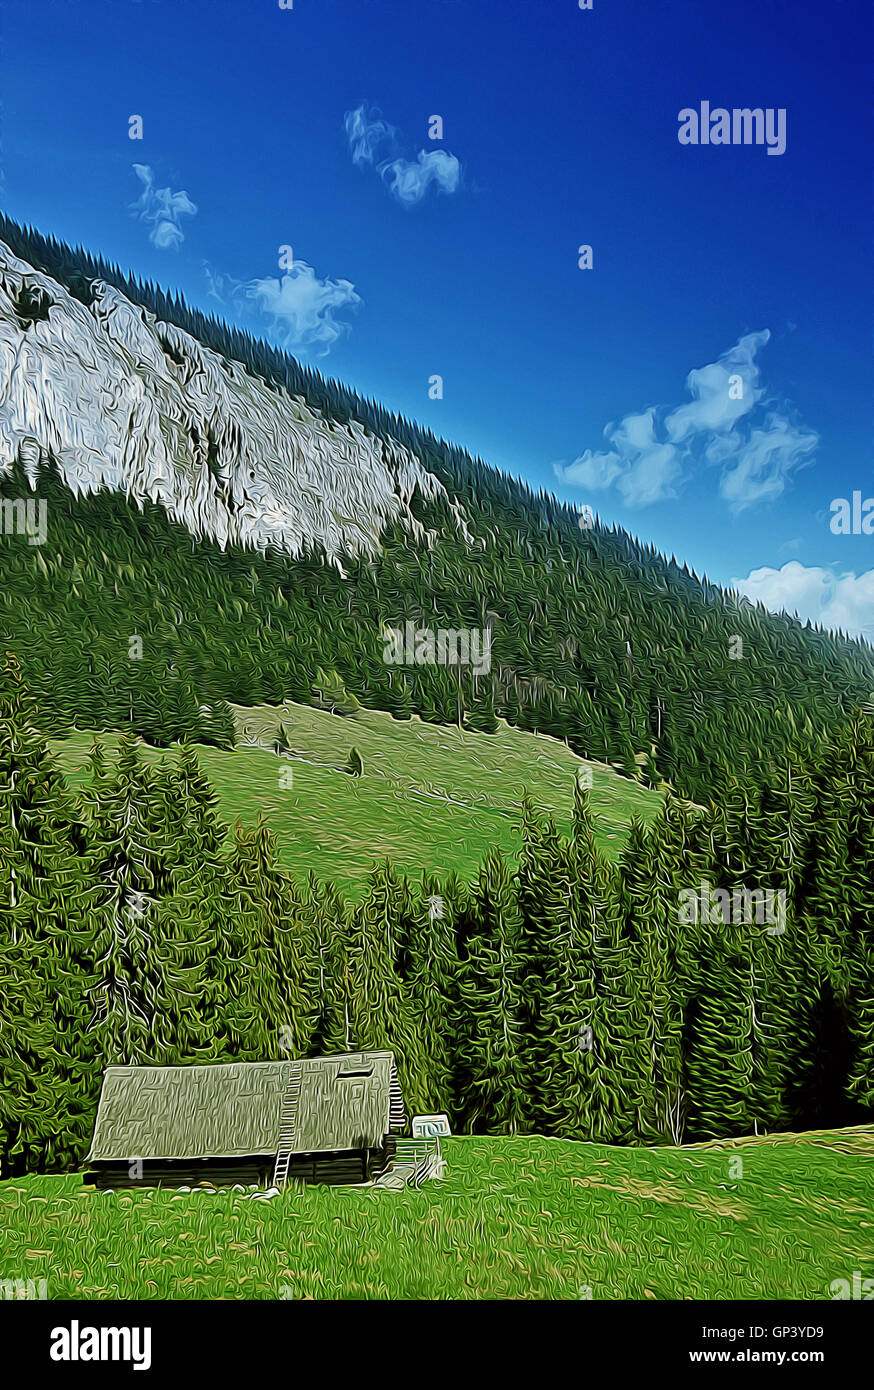 Illustration de la vallée de printemps avec le dirigeant d'une maison au milieu d'une forêt de sapins. Journée ensoleillée, pré vert et blanc mountain vues Banque D'Images